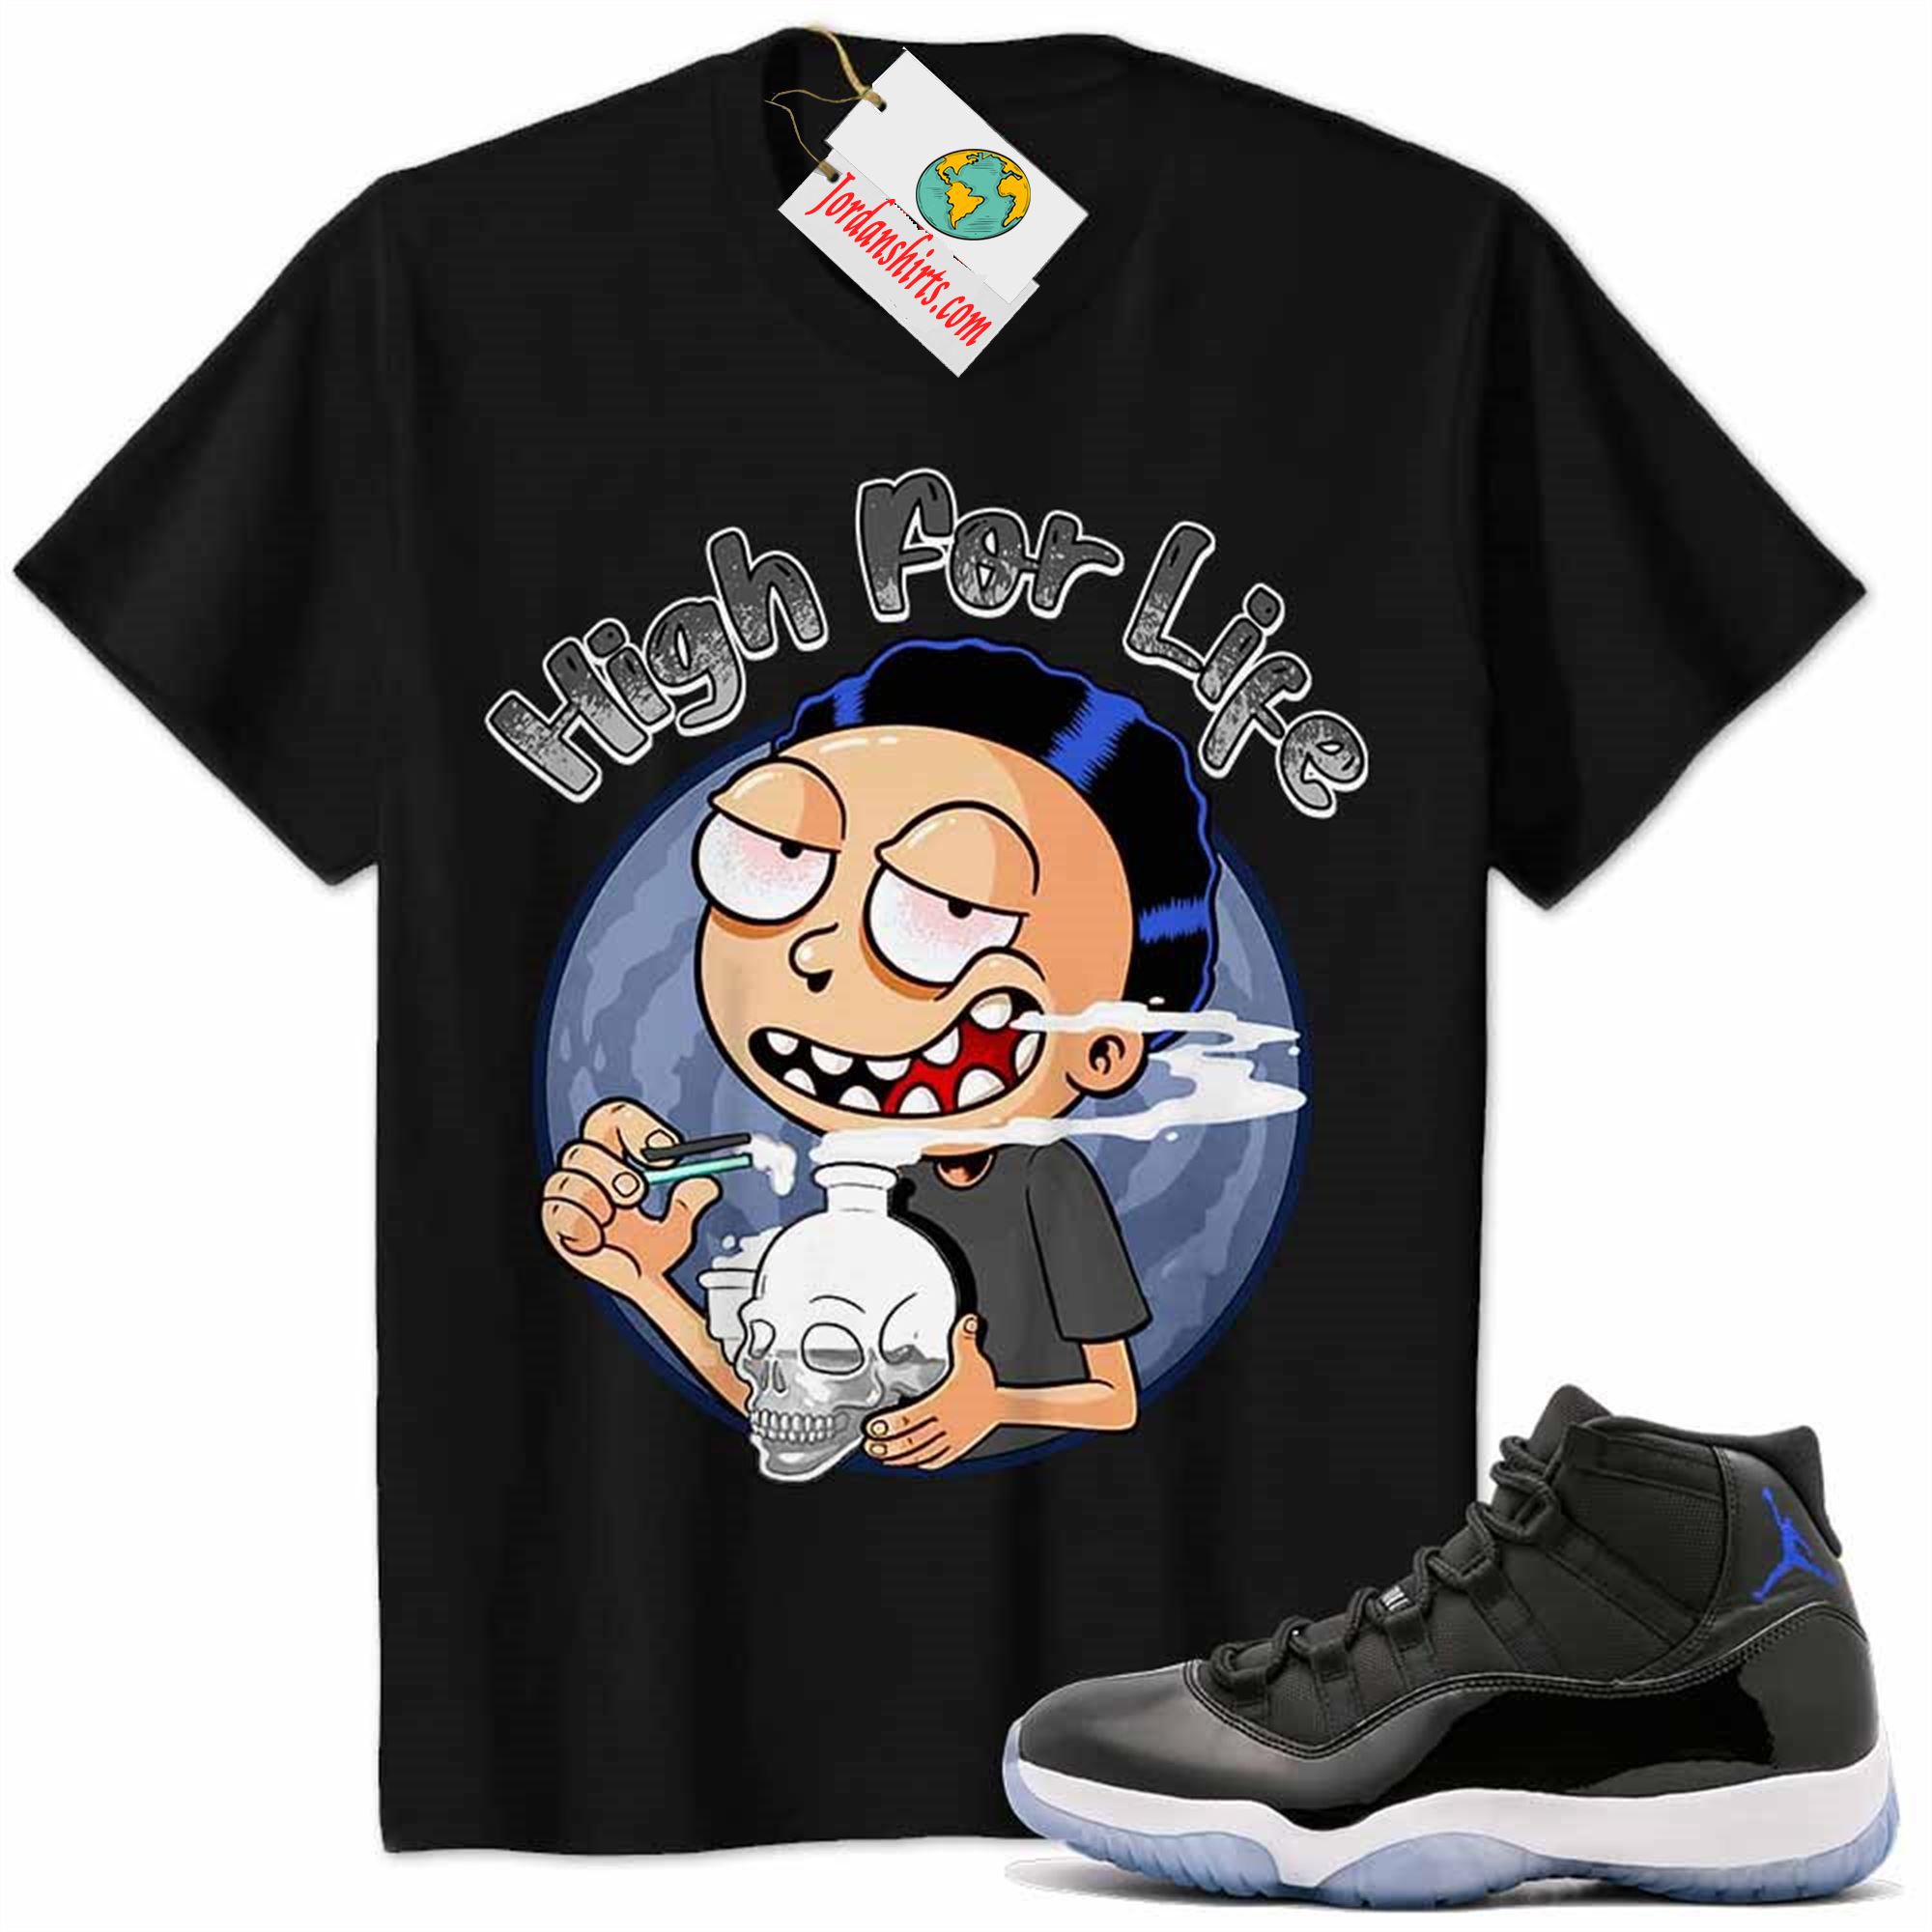 Jordan 11 Shirt, Jordan 11 Space Jam Shirt Morty High For Life Black Size Up To 5xl